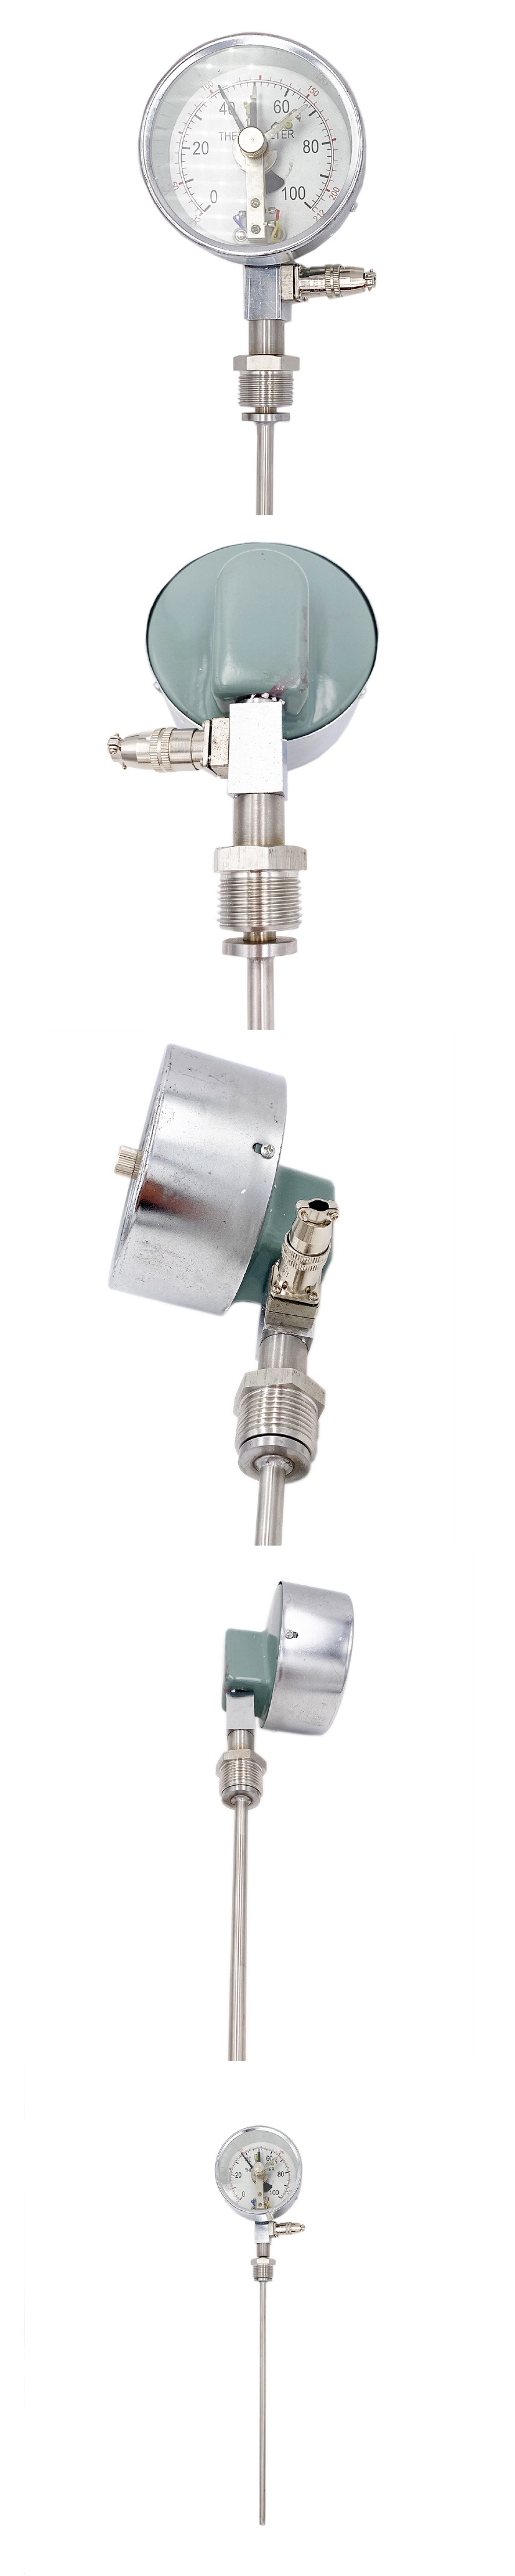 Industrial Wss Temperature Gauge Metal Water Boiler Bimetal Thermometer Sensor